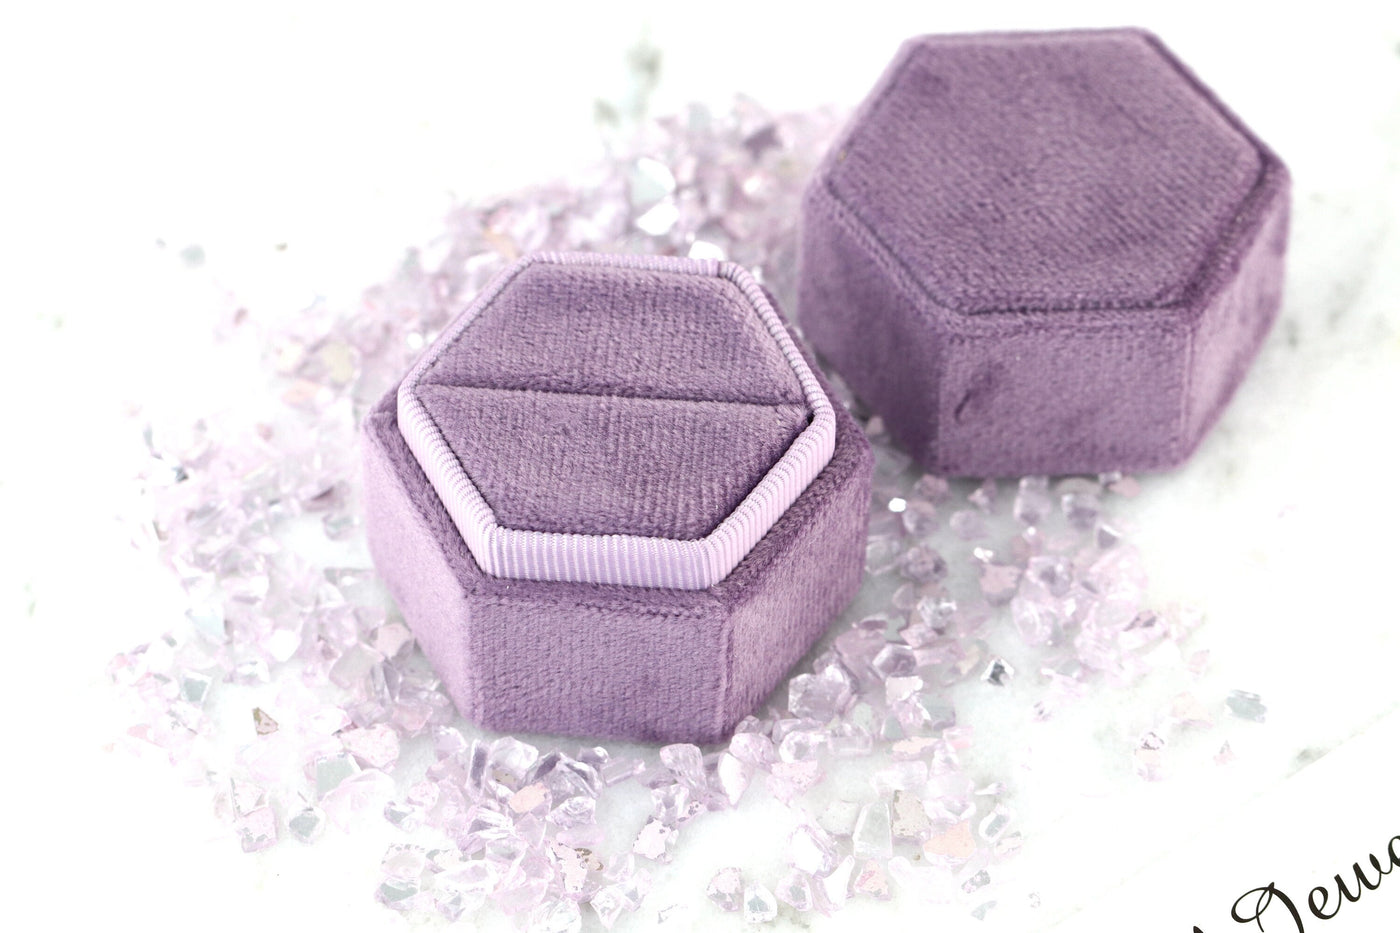 Luxury Velvet Hexagon Ring Box